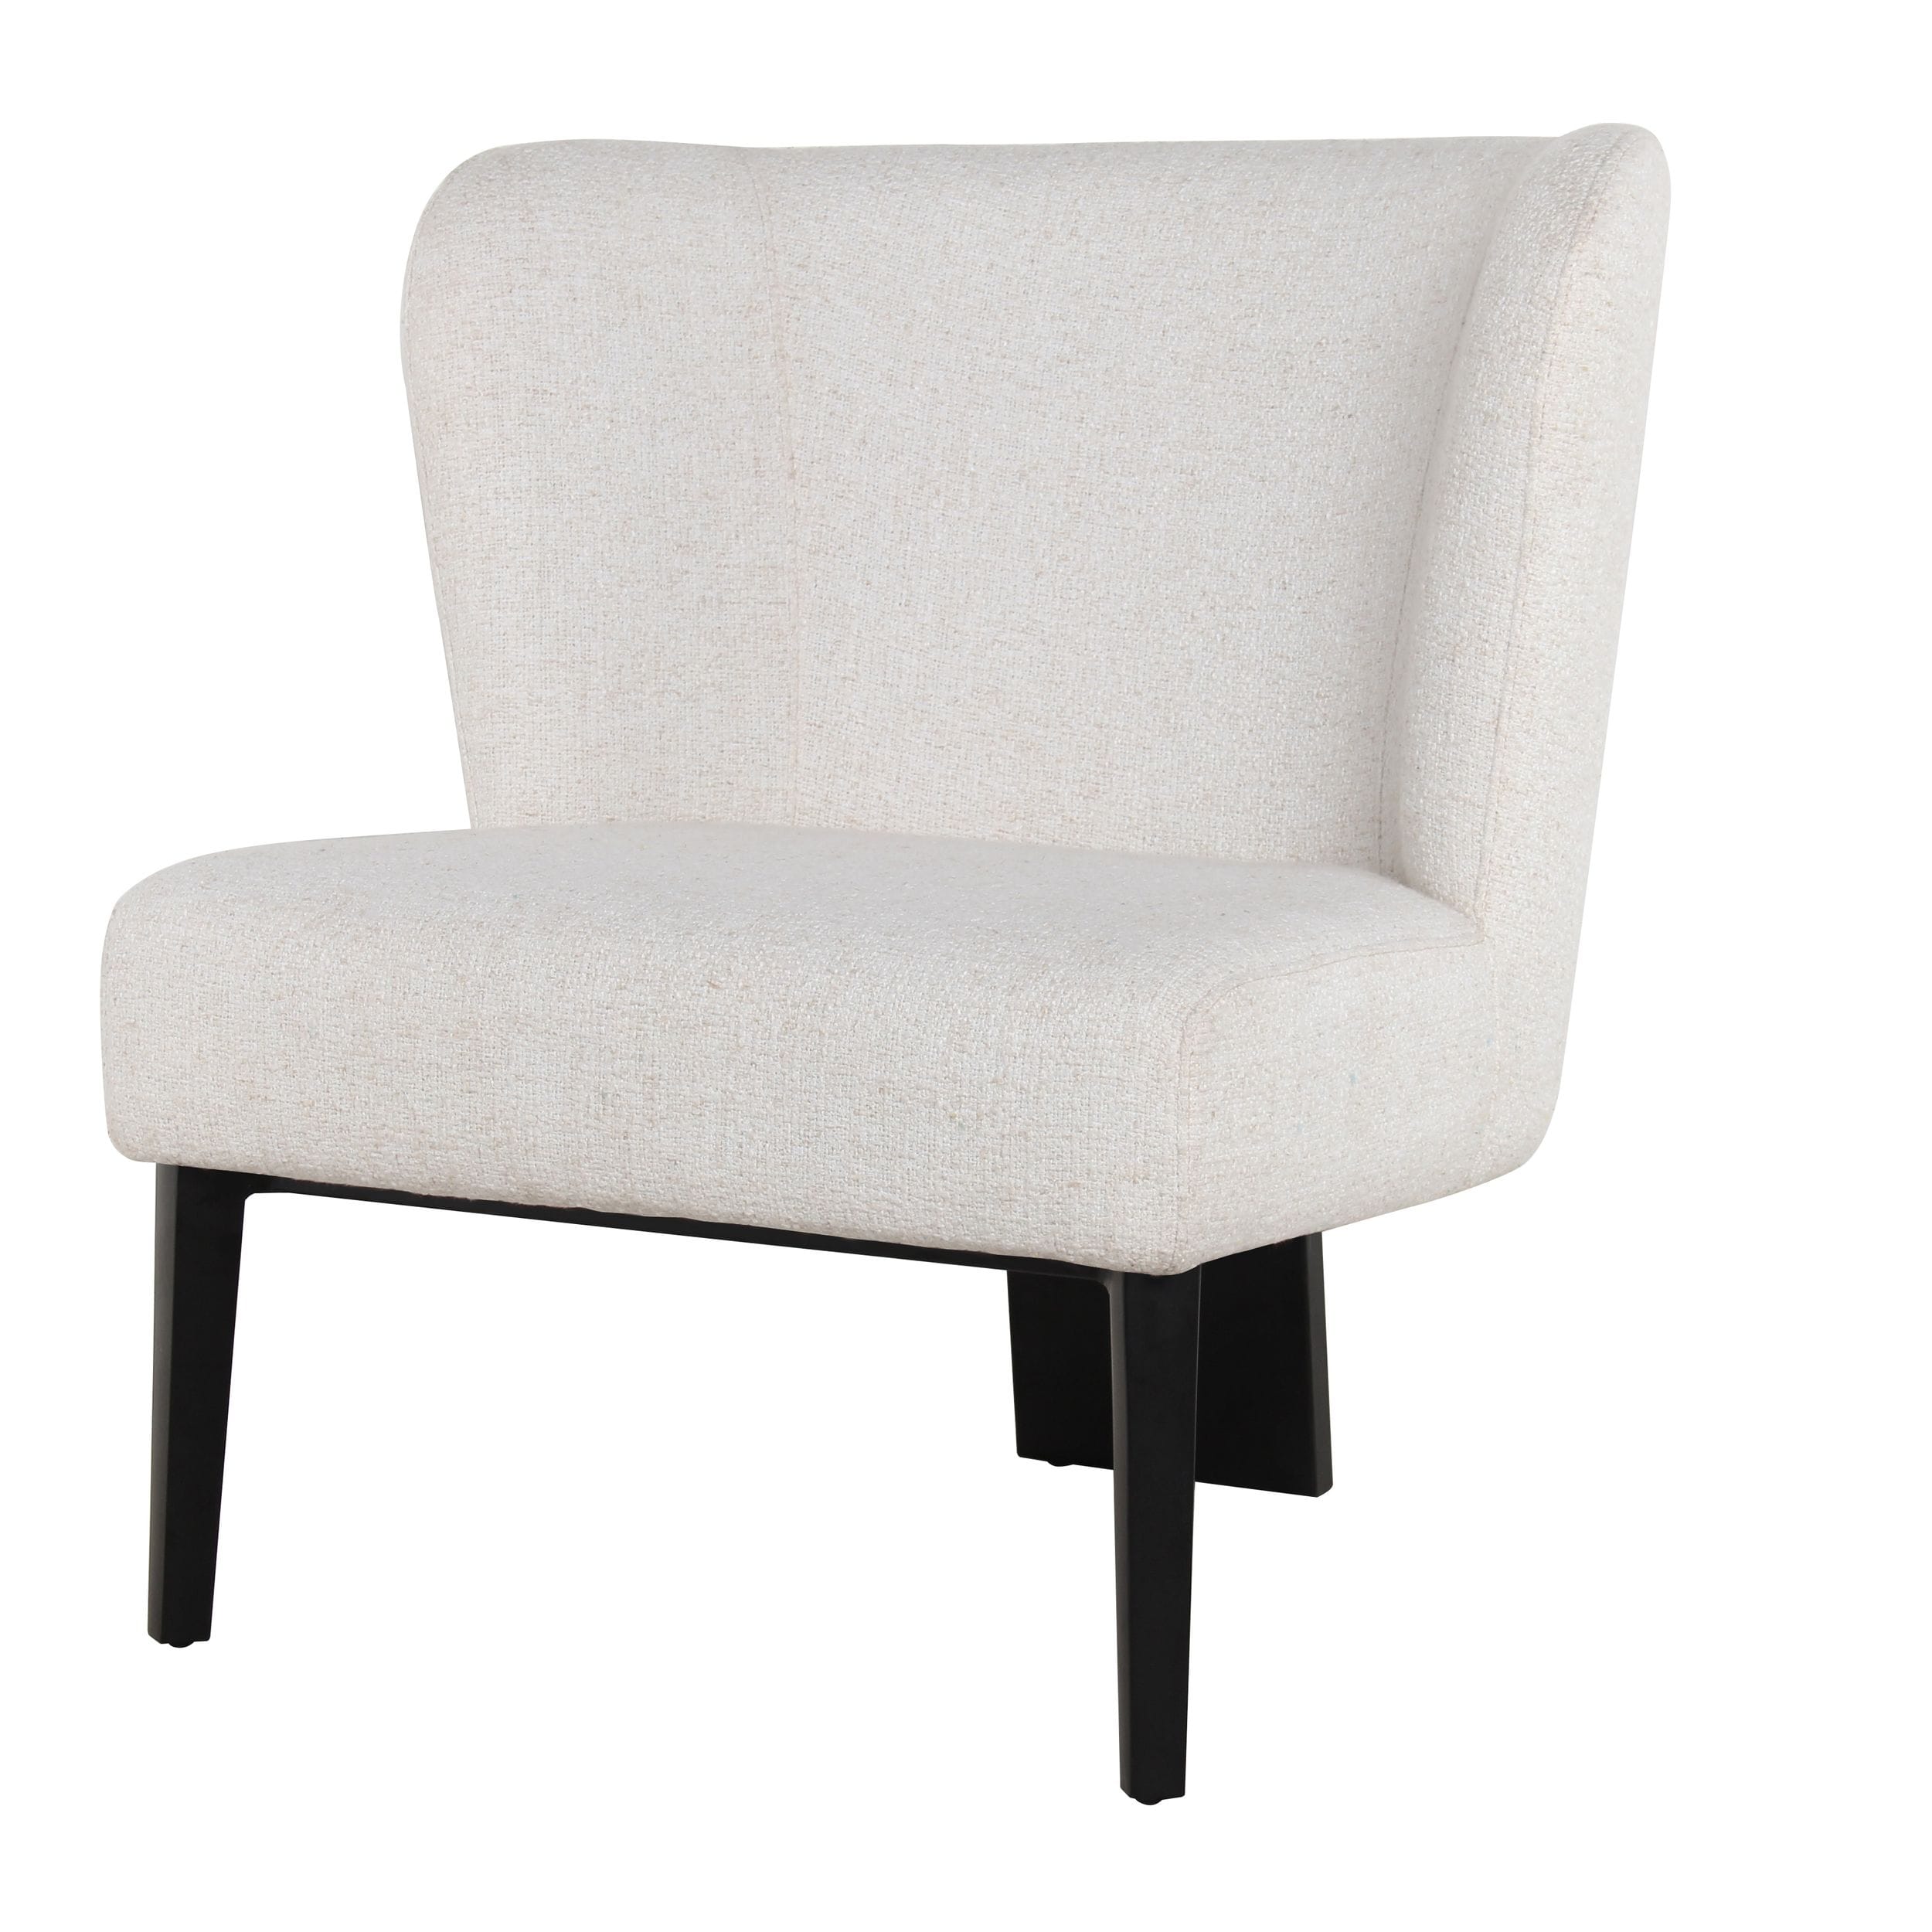 Divani Casa Ladean - Modern White Accent Chair-Lounge Chair-VIG-Wall2Wall Furnishings